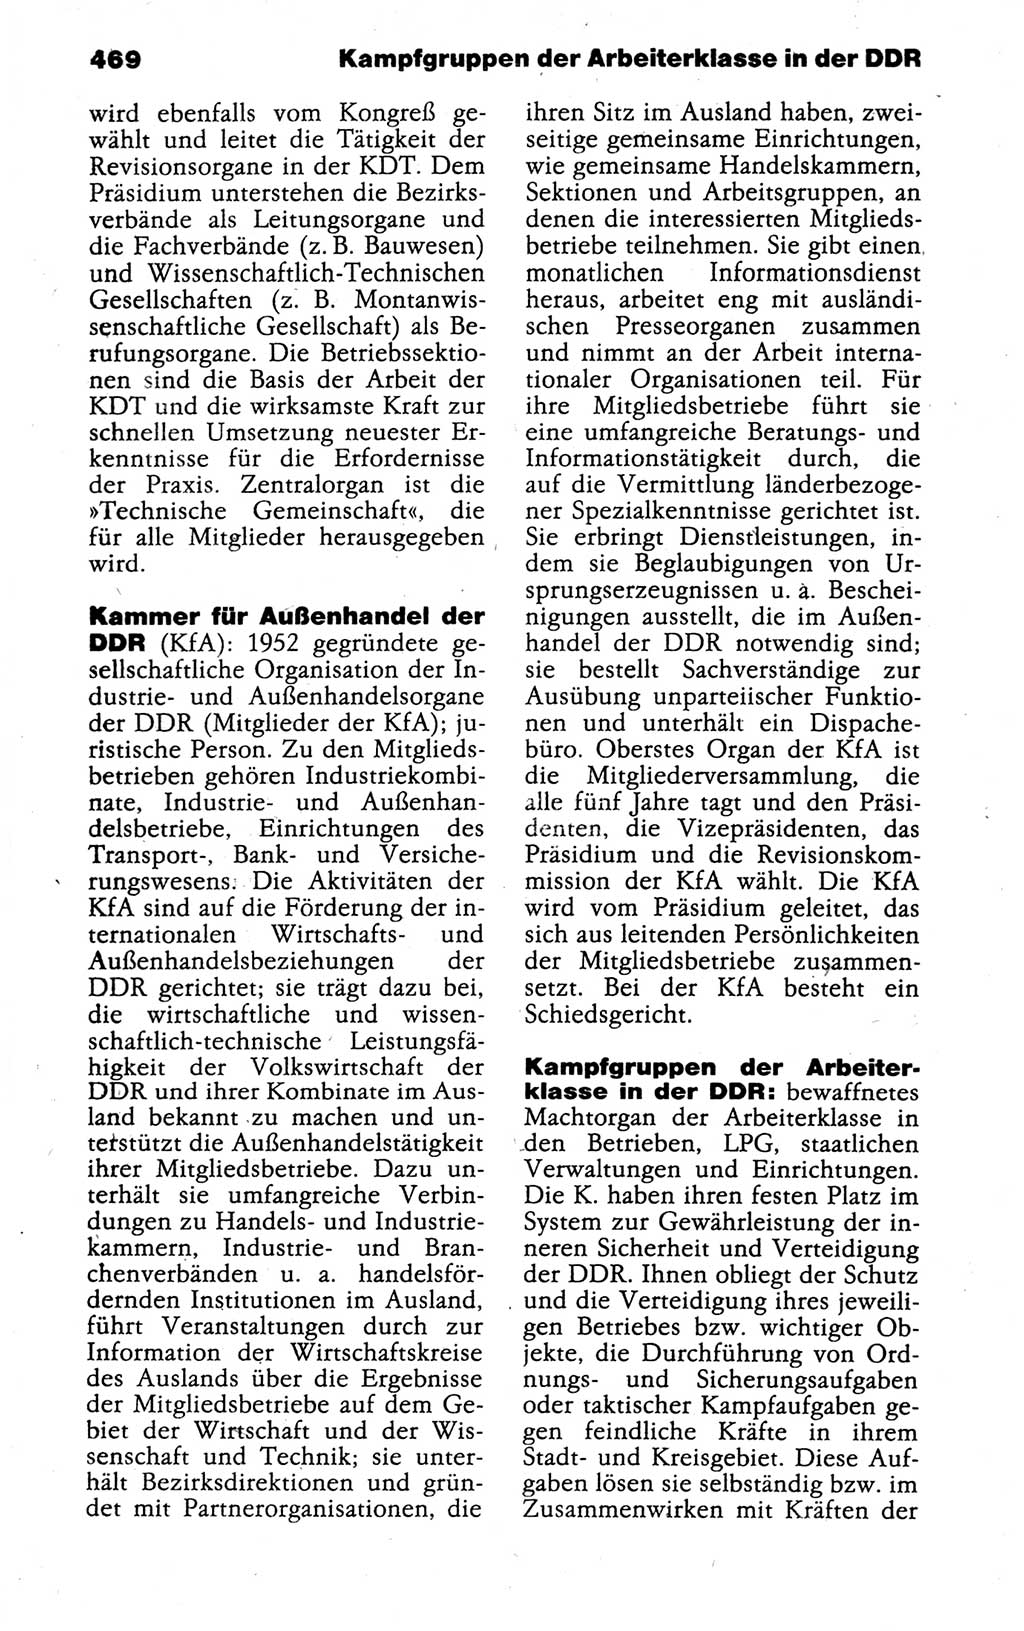 Kleines politisches Wörterbuch [Deutsche Demokratische Republik (DDR)] 1988, Seite 469 (Kl. pol. Wb. DDR 1988, S. 469)